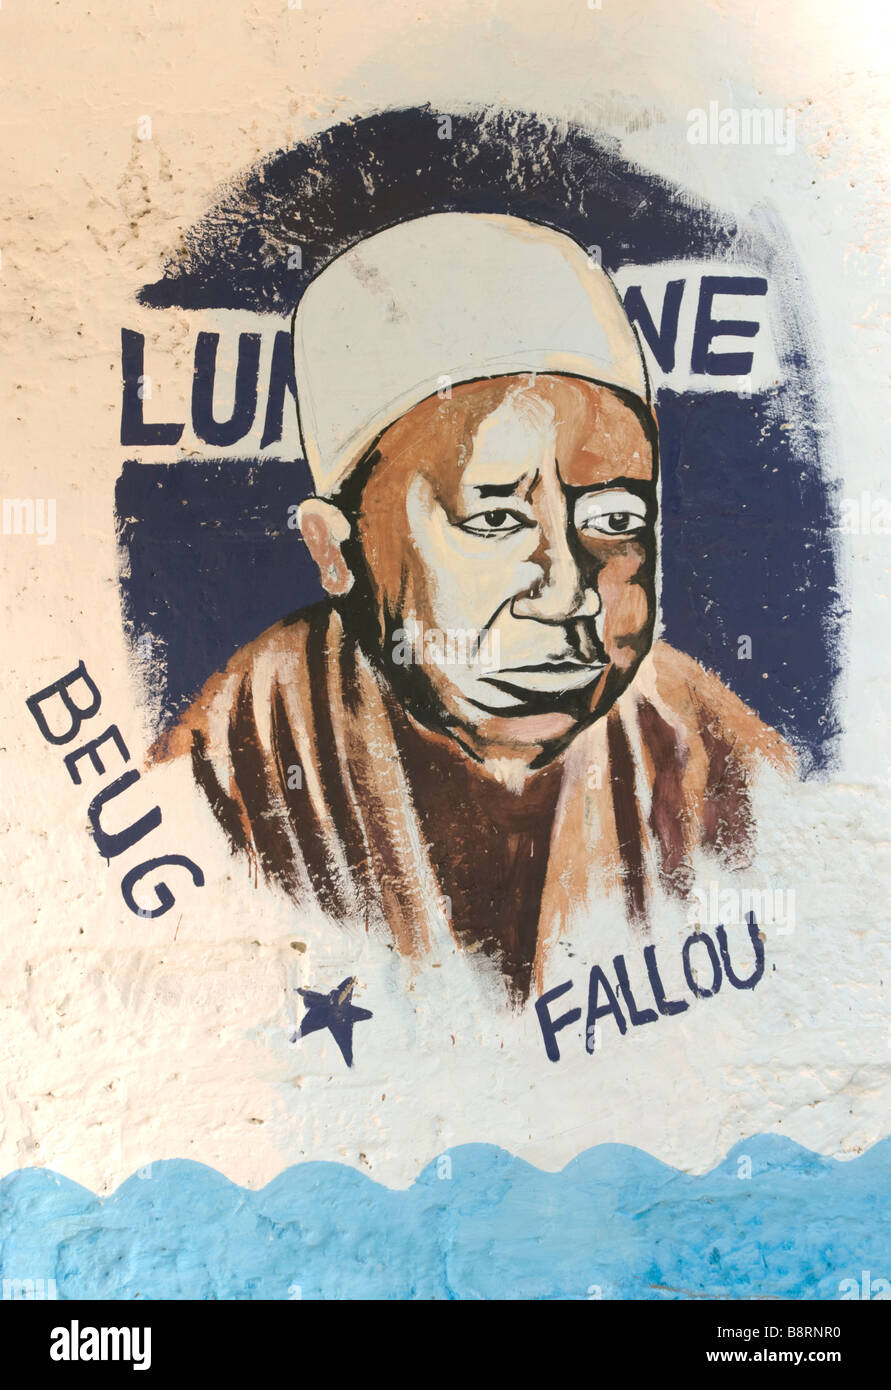 Profil de leader spirituel peint sur les murs de Tambacounda au Sénégal Afrique de l'ouest Banque D'Images